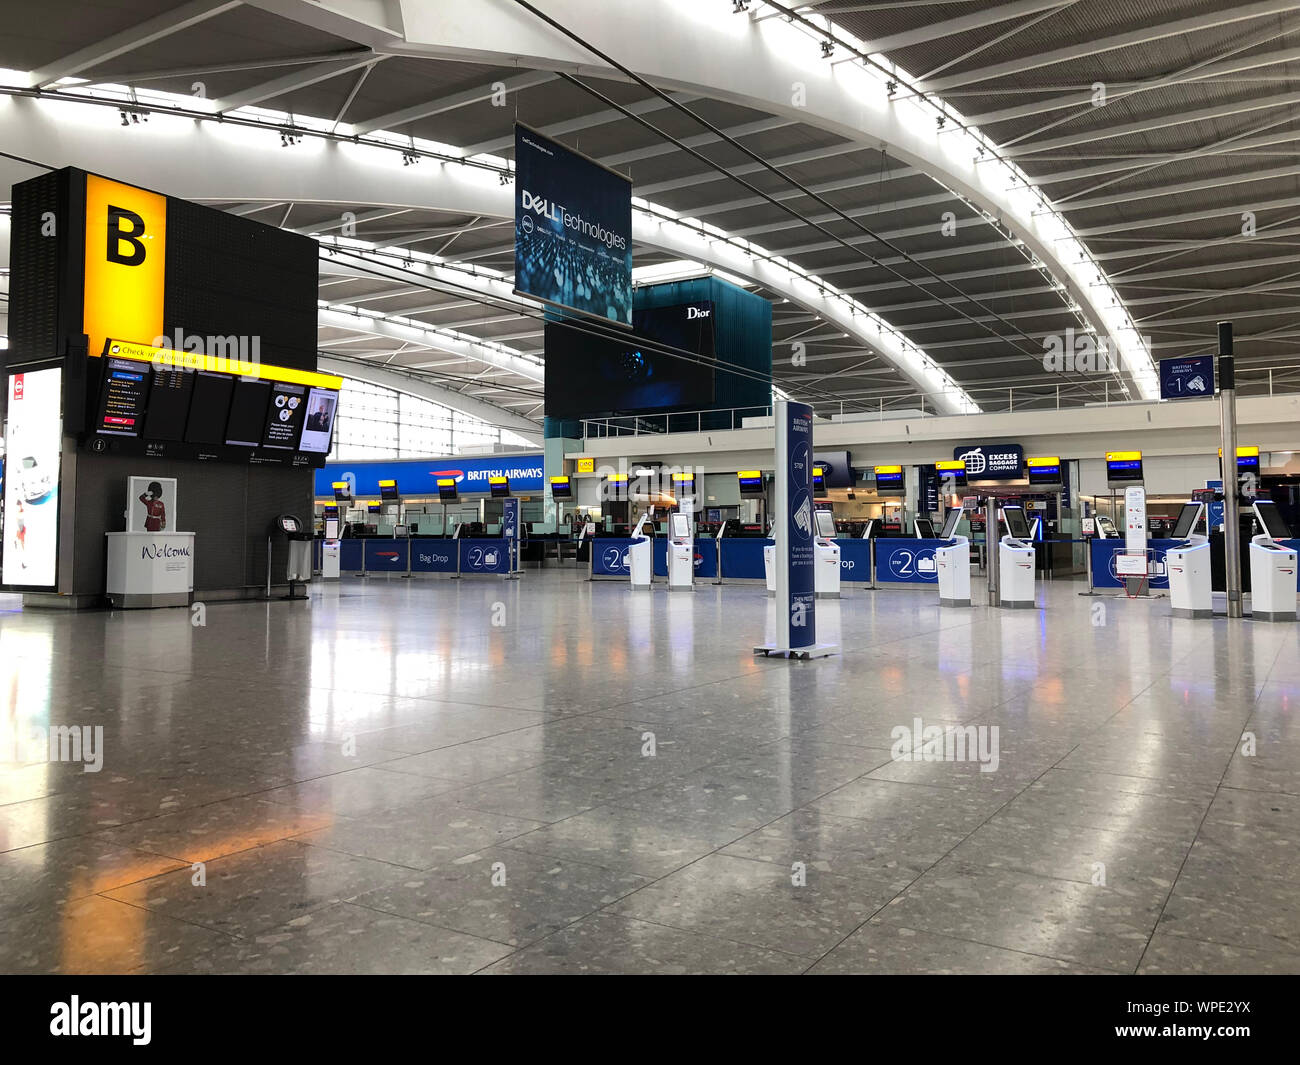 All'interno del Terminal 5 dell'aeroporto di Heathrow di Londra, il giorno uno del primo-mai colpire da British Airways piloti. La 48 ore di camminata in una lunga controversia sulla retribuzione, storpio voli da lunedì, causando interruzioni di viaggio per decine di migliaia di passeggeri. Foto Stock